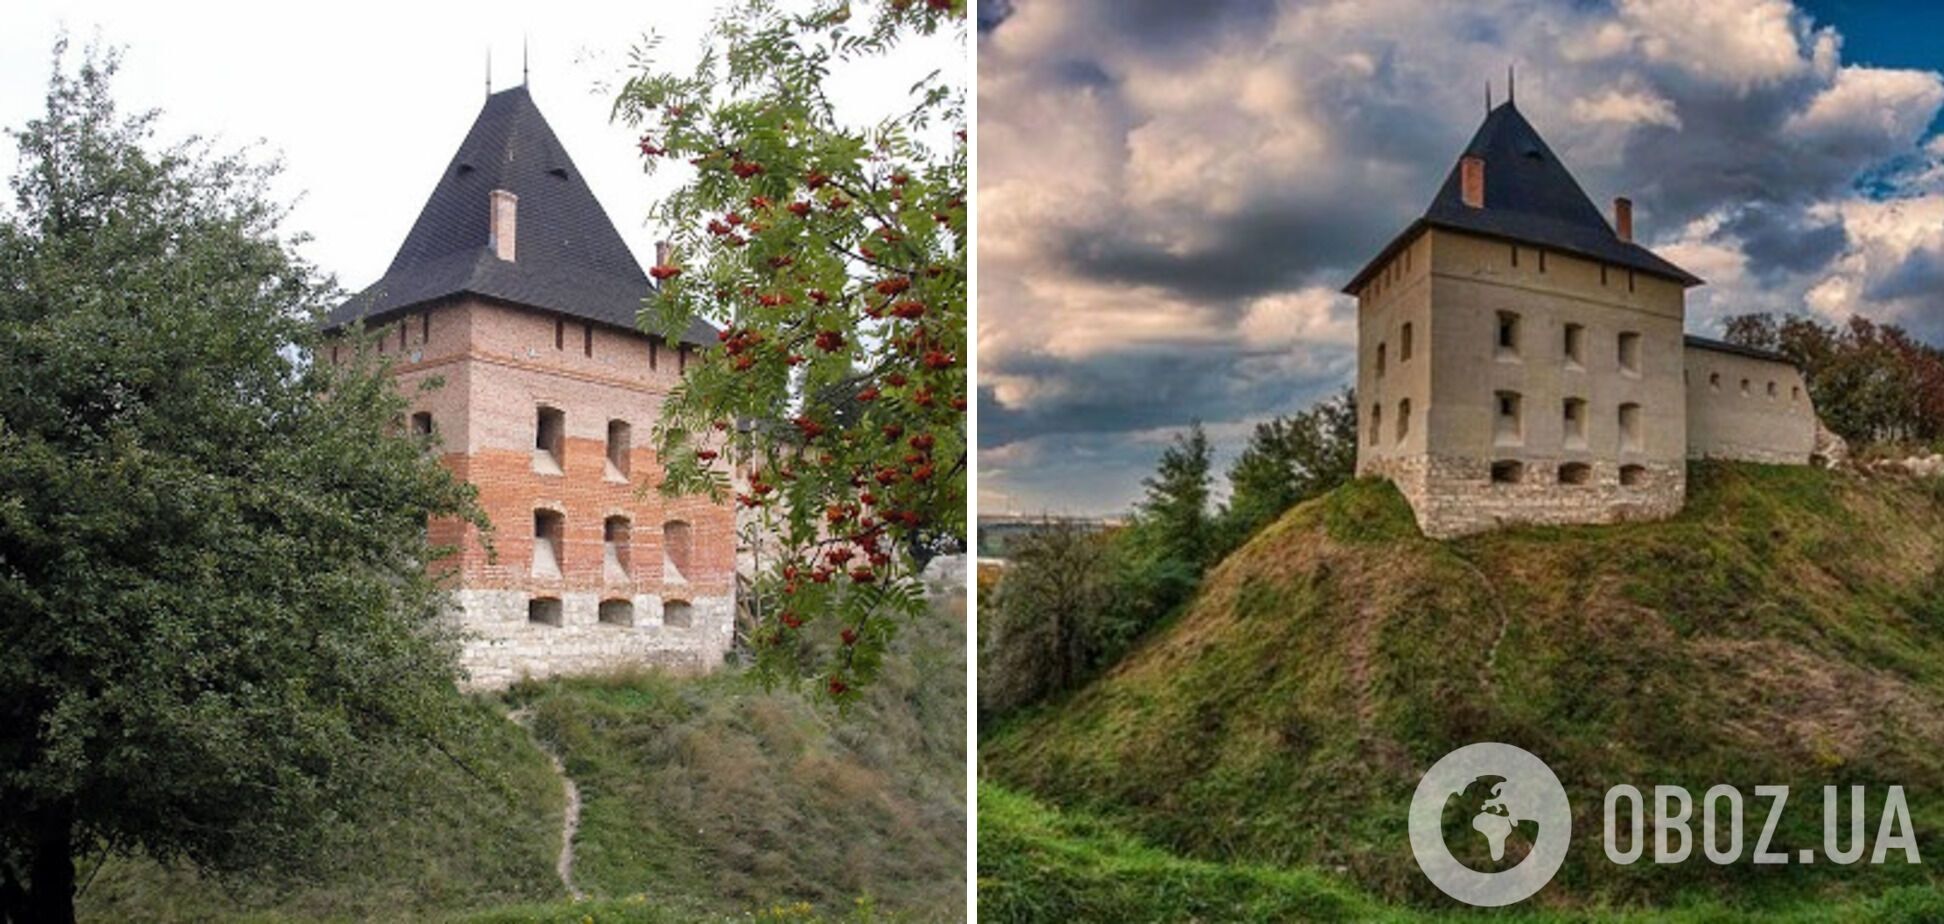 Галицький замок в Івано-Франківській області був побудований у XIV році.